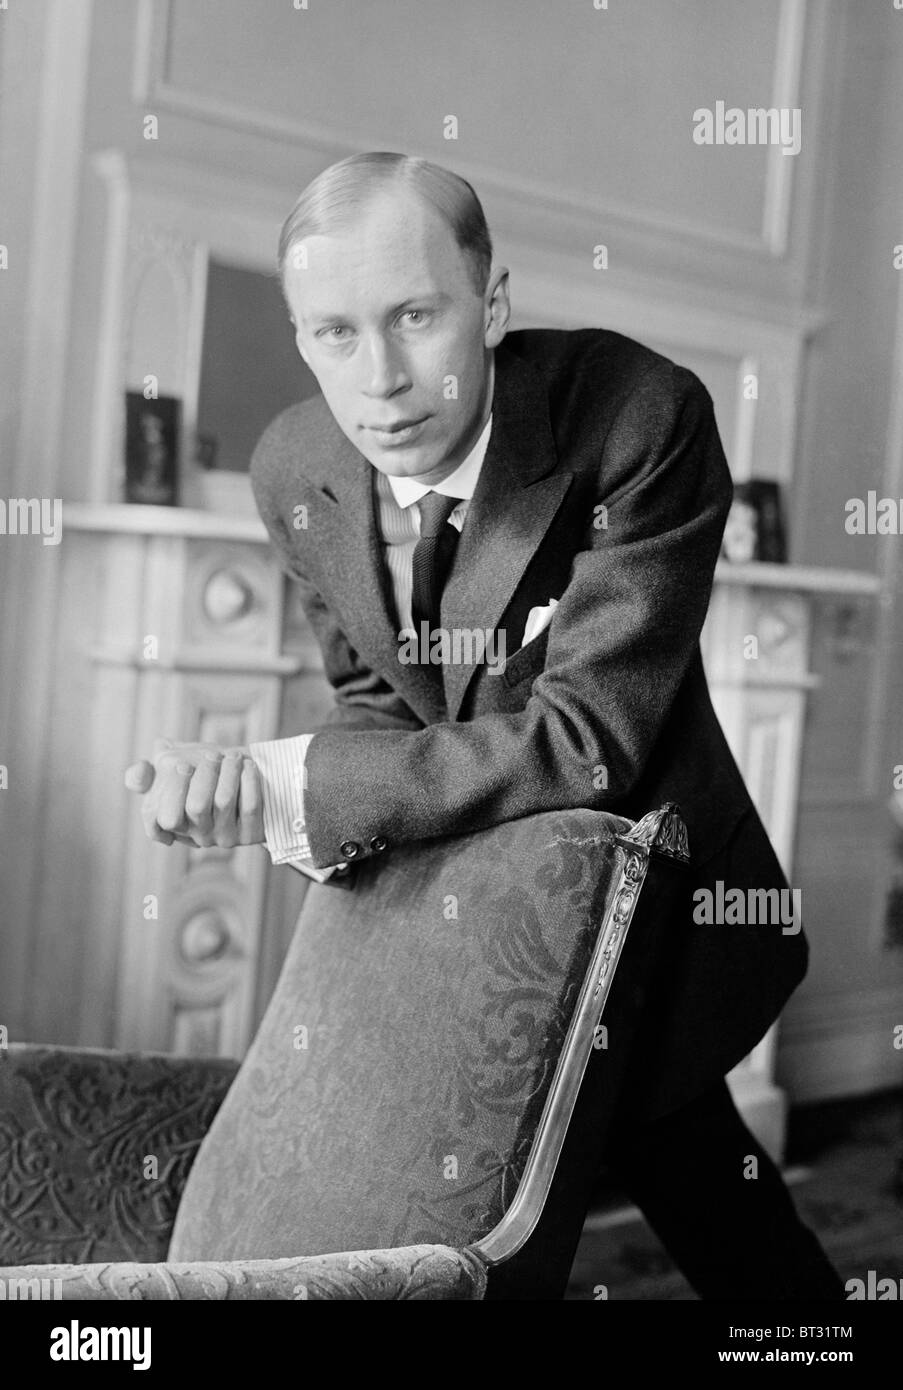 Foto retrato circa 1918 de la Federación de compositor, pianista y director de orquesta Sergei Prokofiev (1891 - 1953). Foto de stock